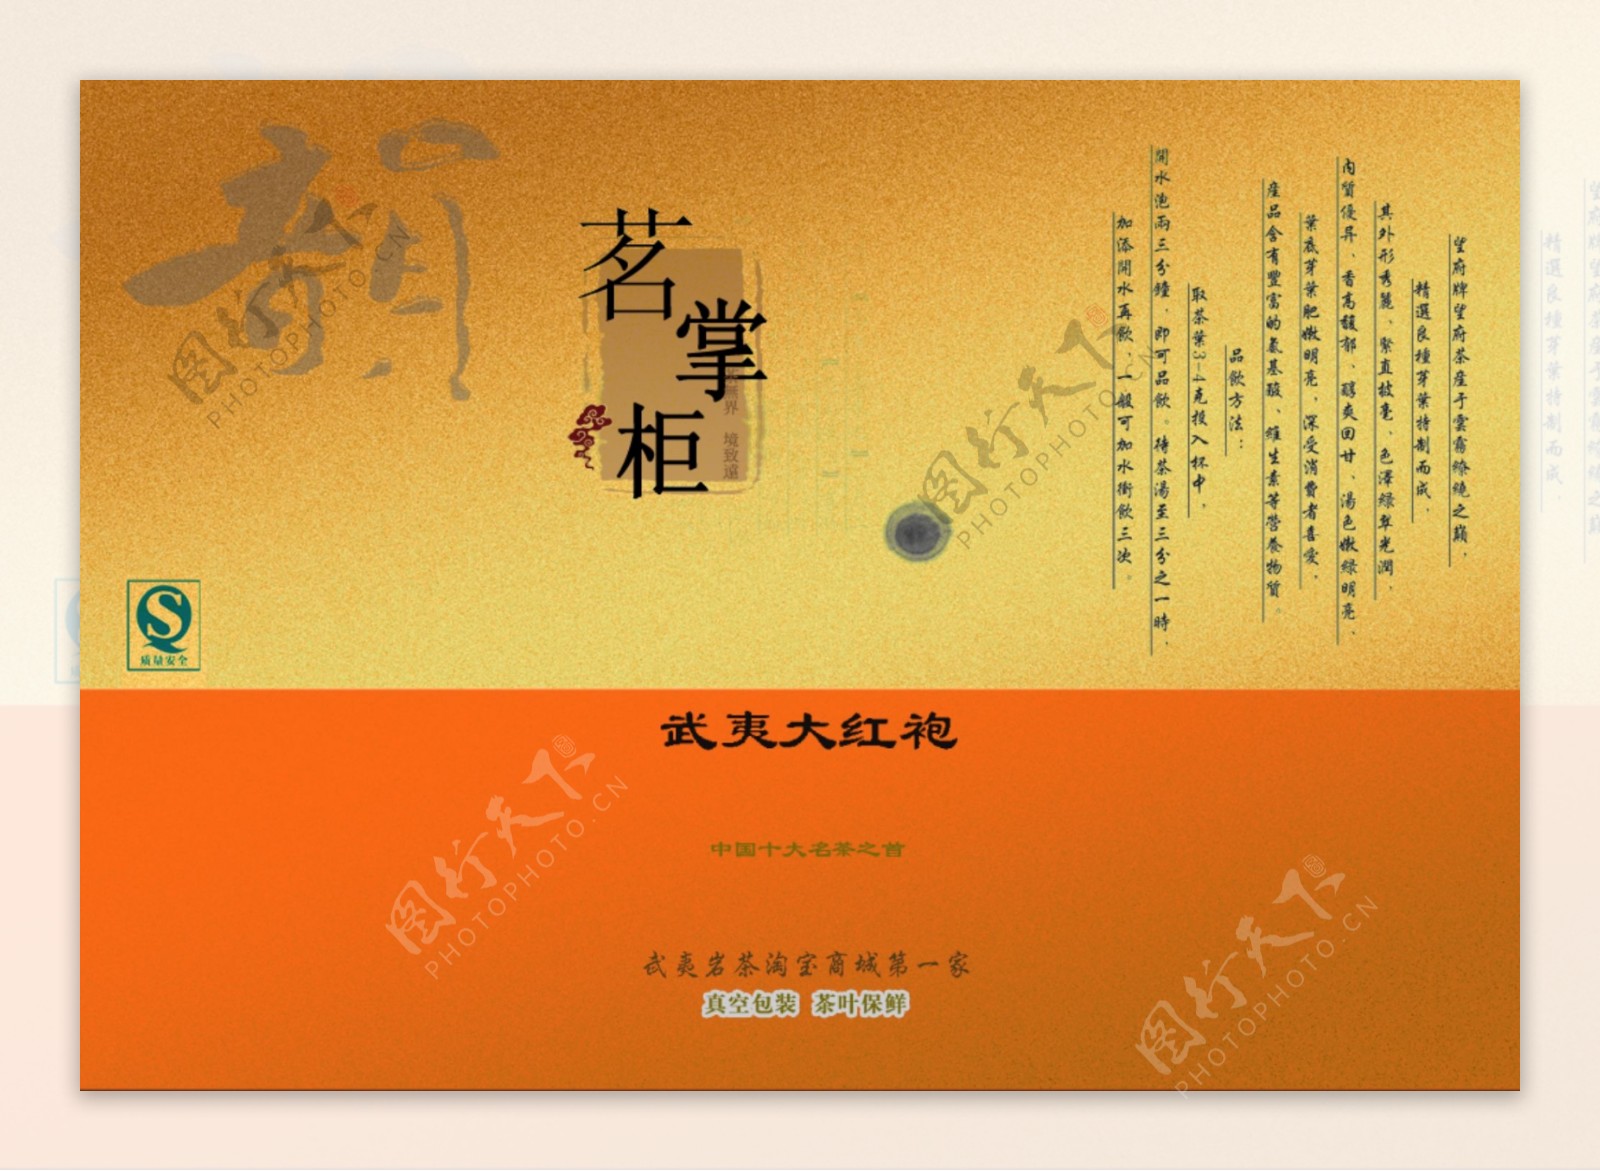 茗掌柜茶叶淘宝商城广告招牌海报包装袋设计图片